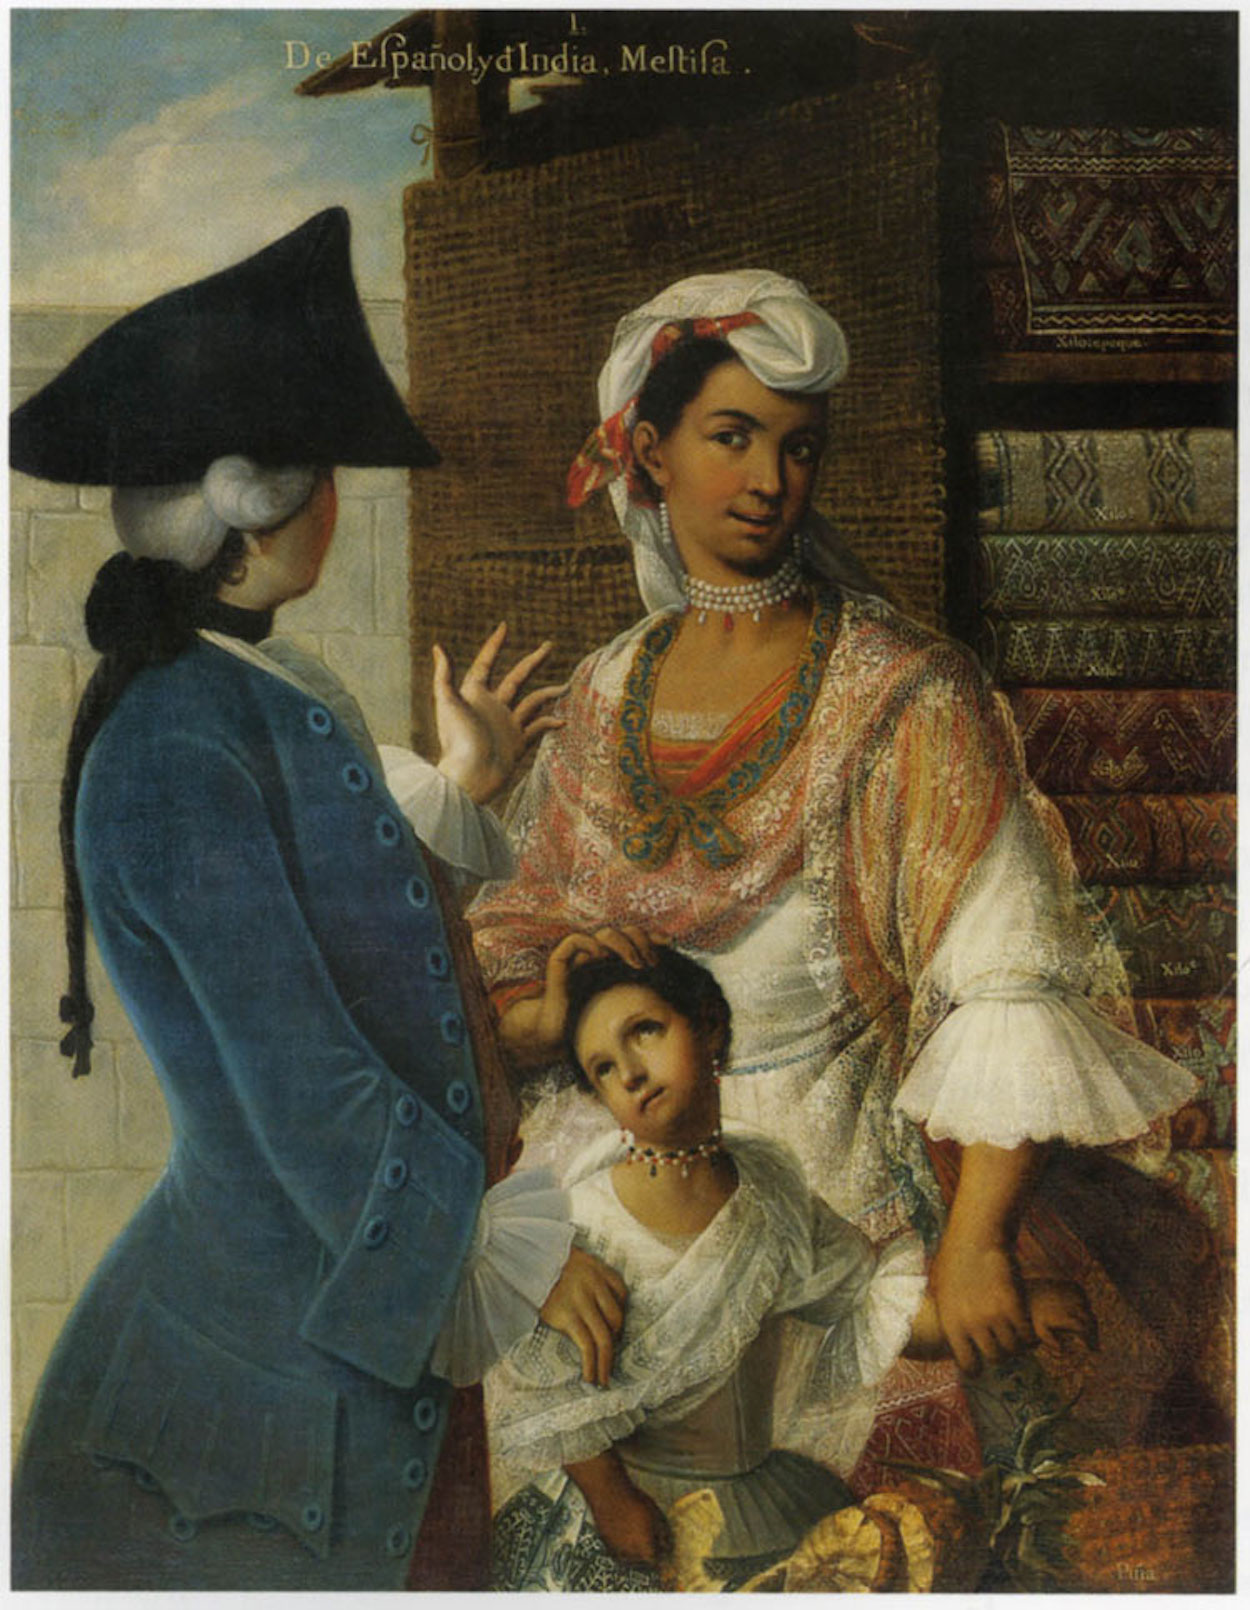 De Español e India, Mestiza by Miguel Mateo Maldonado y Cabrera - c. 1763 collection privée